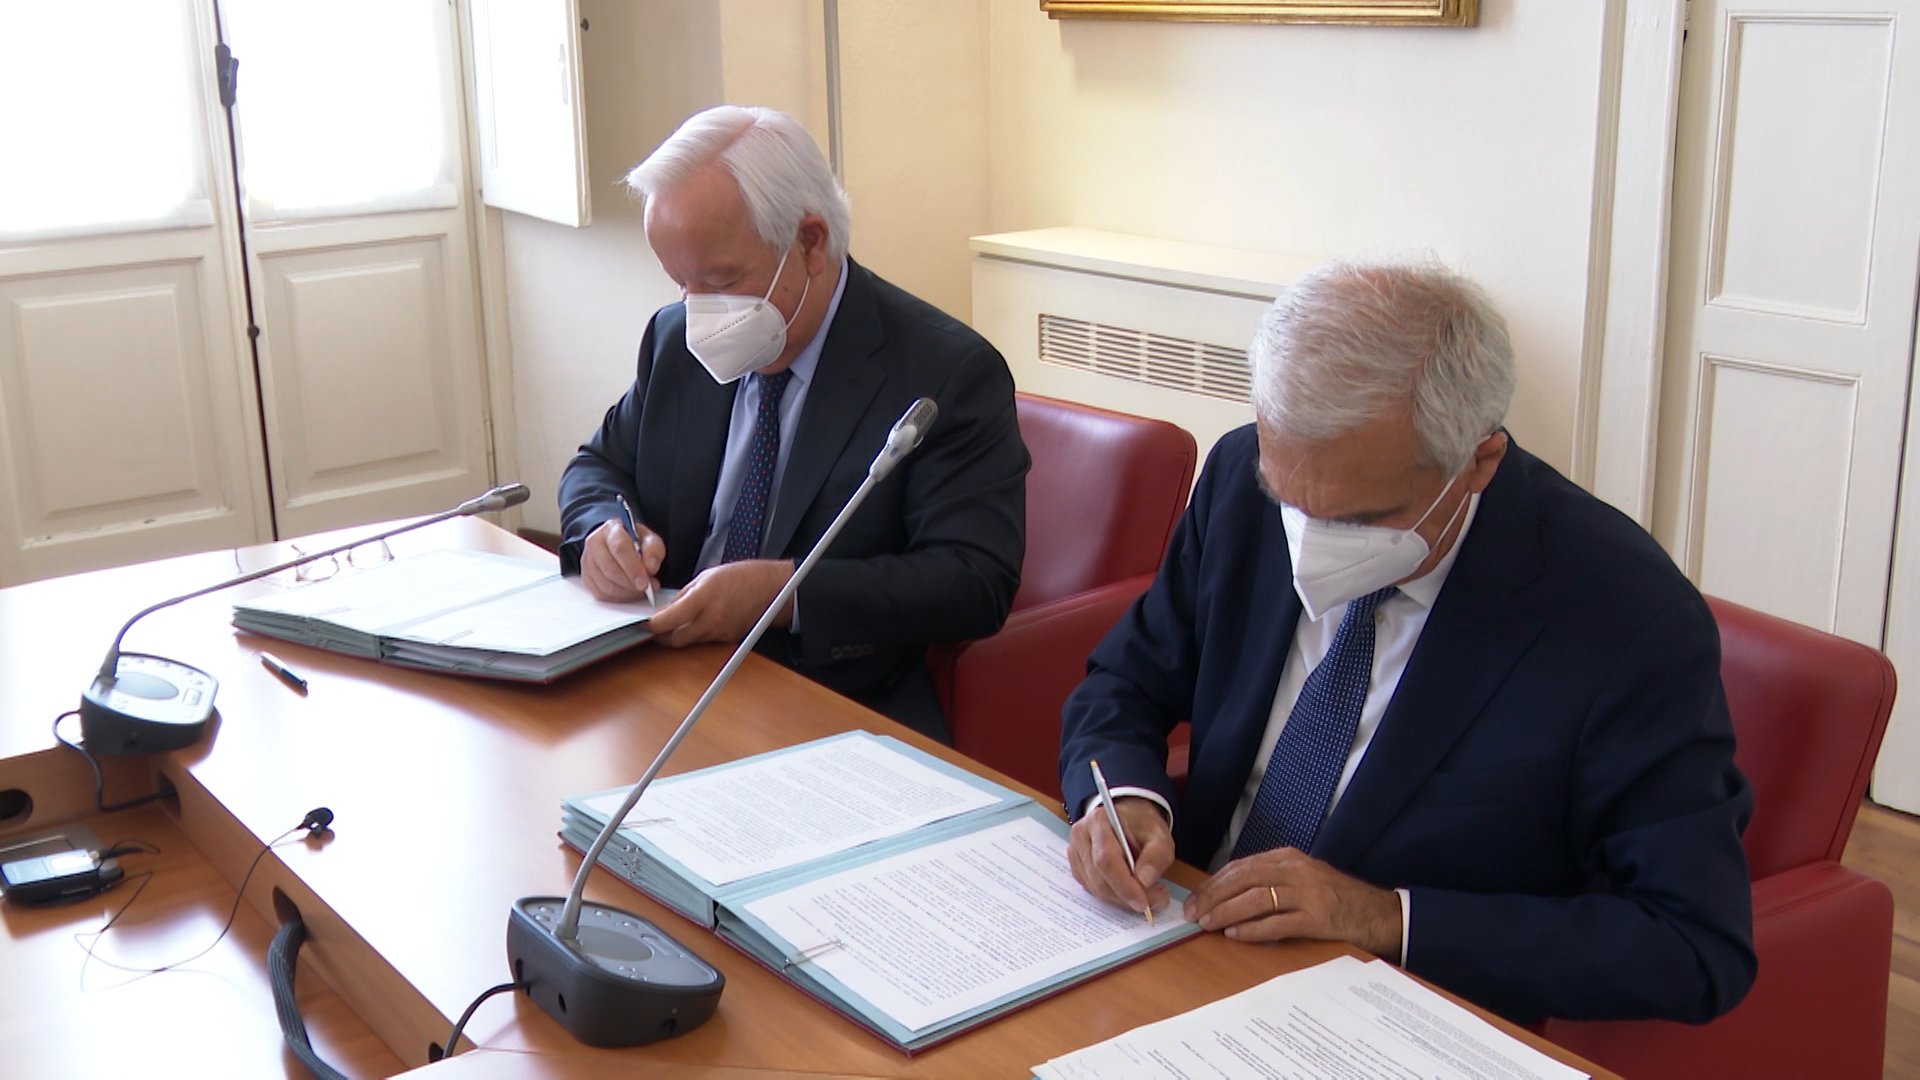 Accordo tra Fondazione Cral e Conservatorio Vivaldi: 90 mila euro per strumenti, didattica e buoni pasto